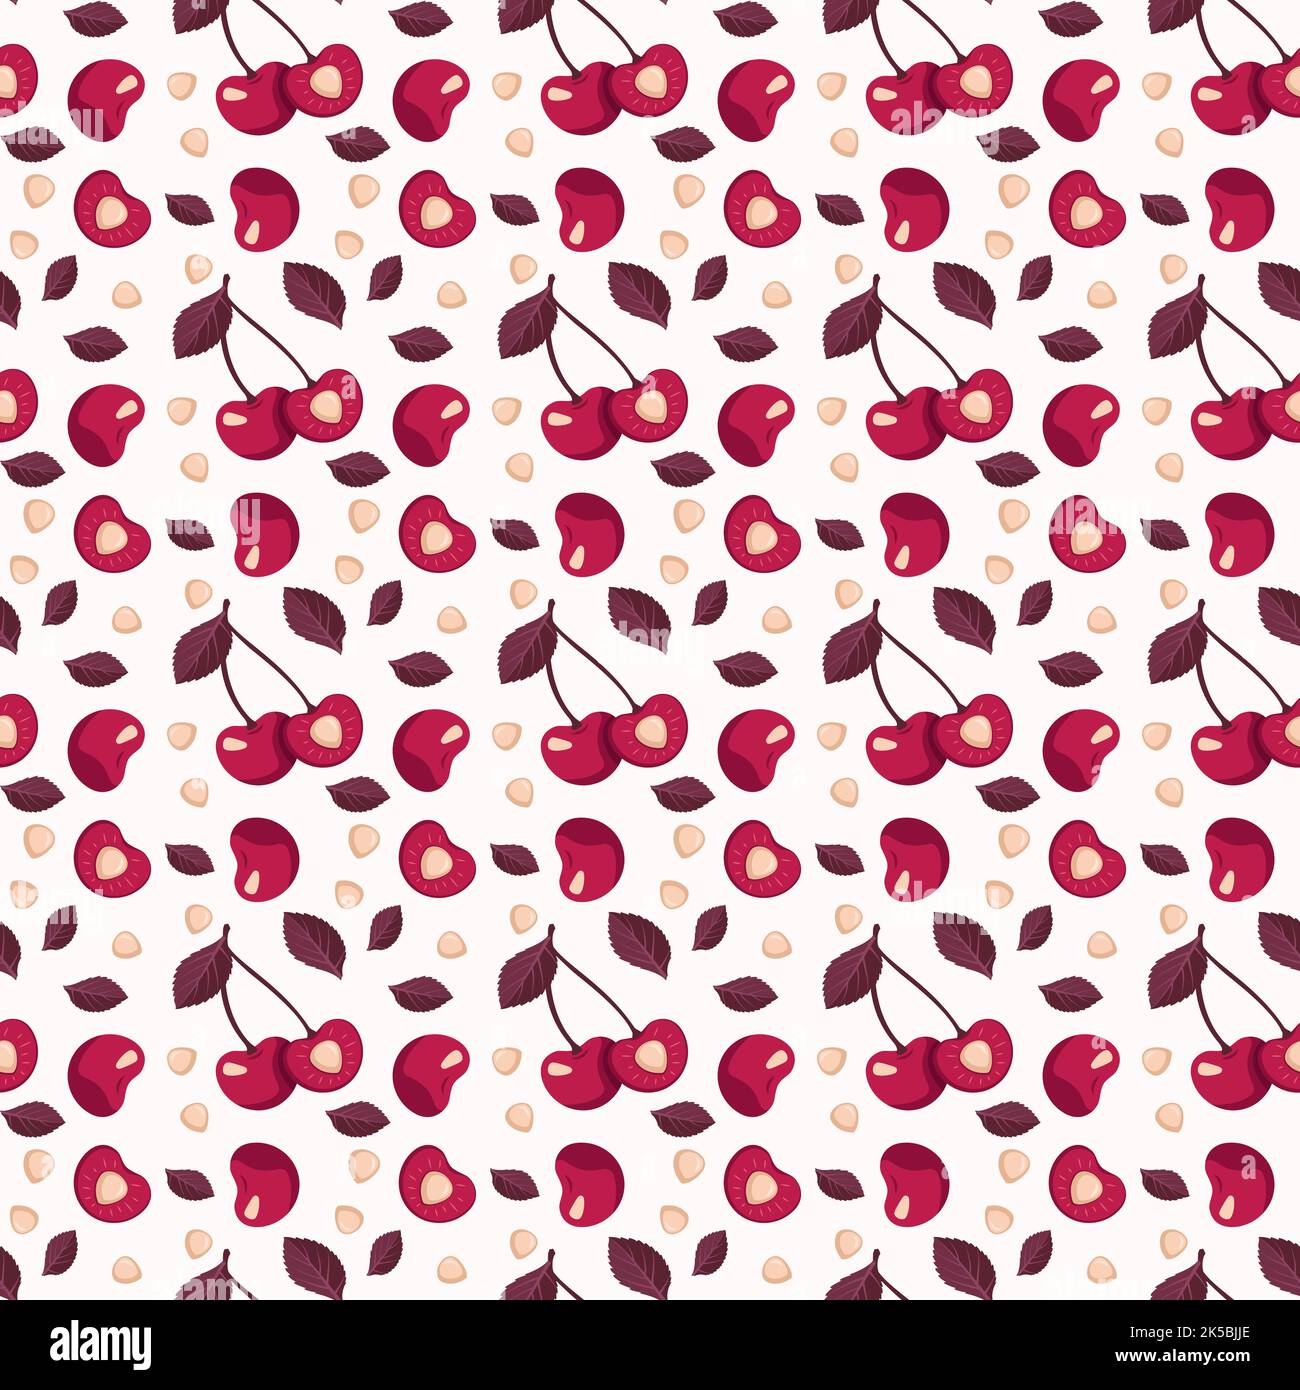 Cherry Berry Nahtloses Muster mit Blättern, Druck auf rosafarbenem Hintergrund in monochromen Farben. Vektor-flache Illustration mit verschiedenen roten Elementen für Frühling und Sommer. Vektorgrafik flach Stock Vektor